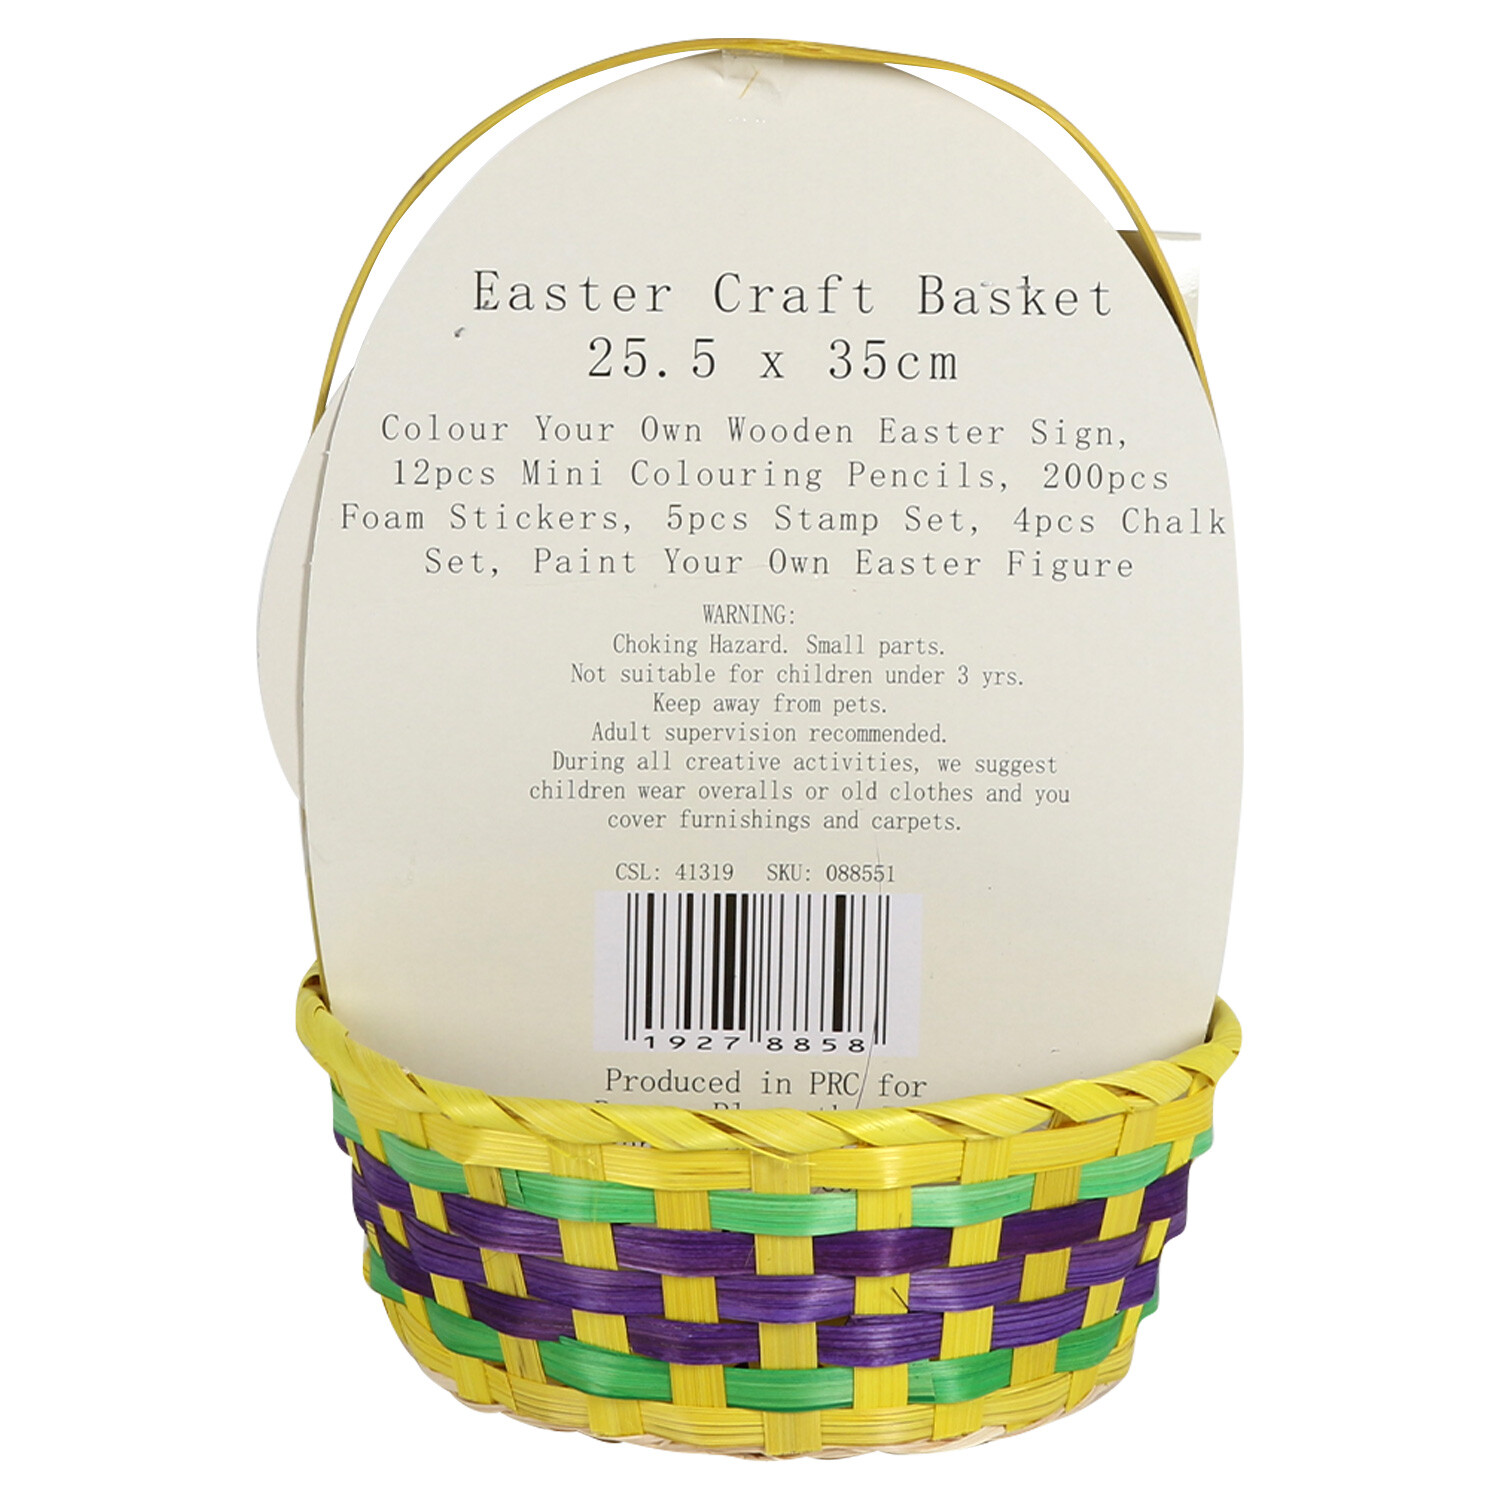 Easter Craft Basket Image 3